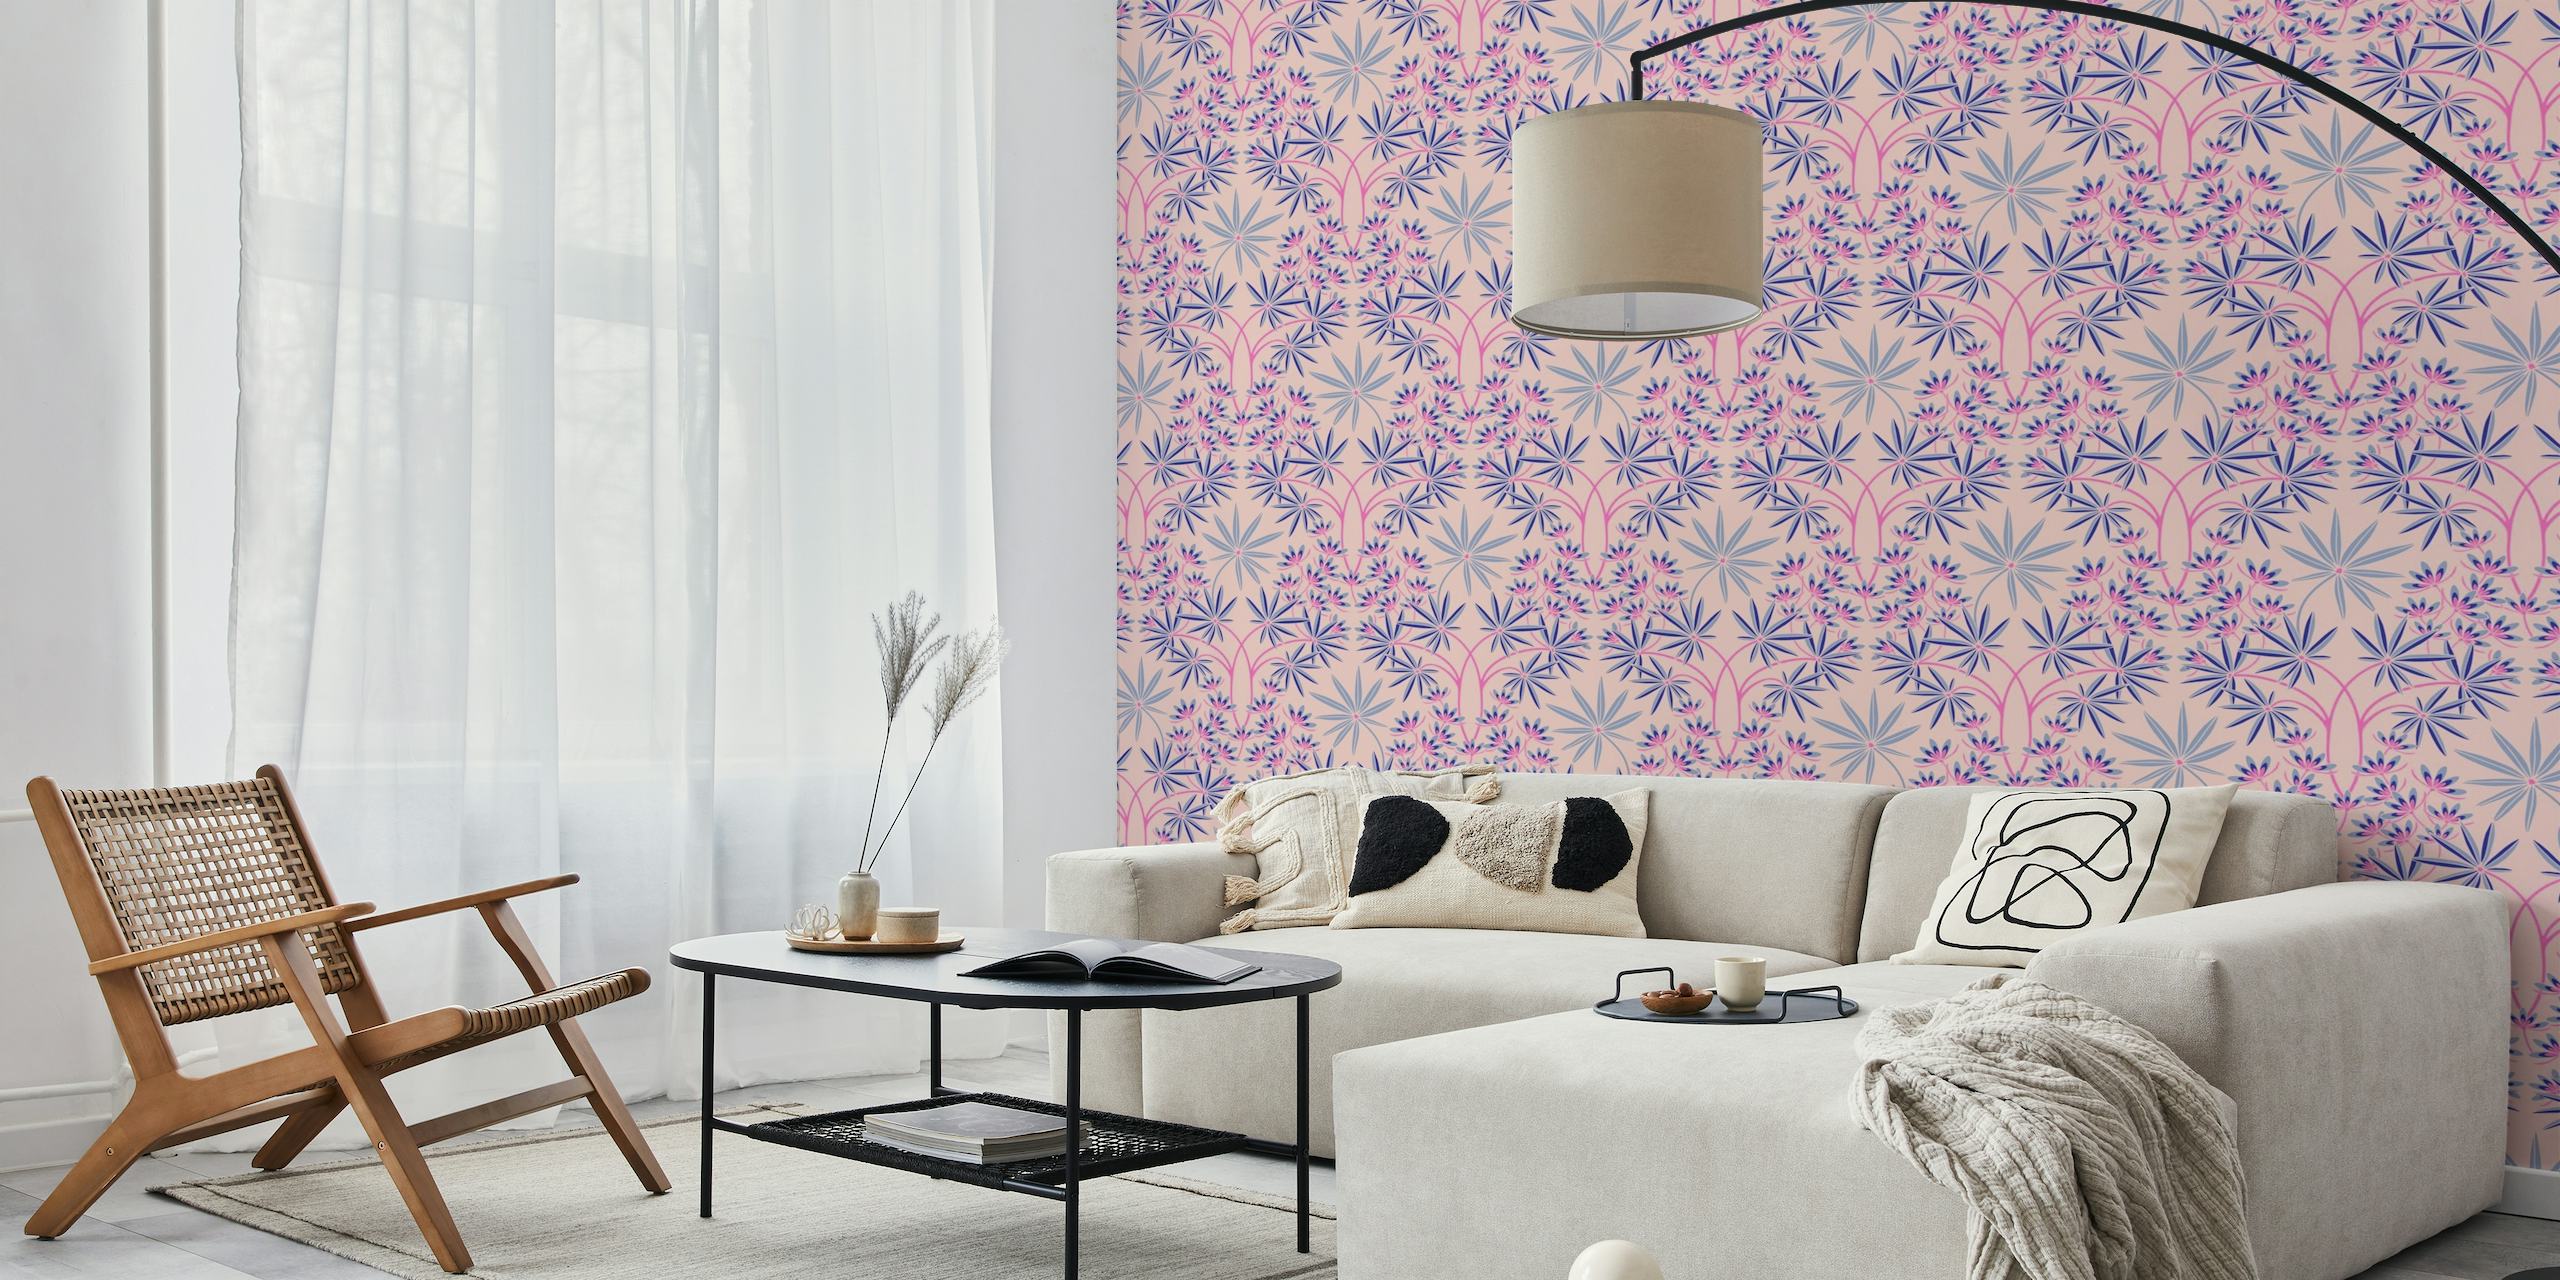 Elegante murale damascato floreale rosa chiaro con delicati accenti blu per l'arredamento della casa